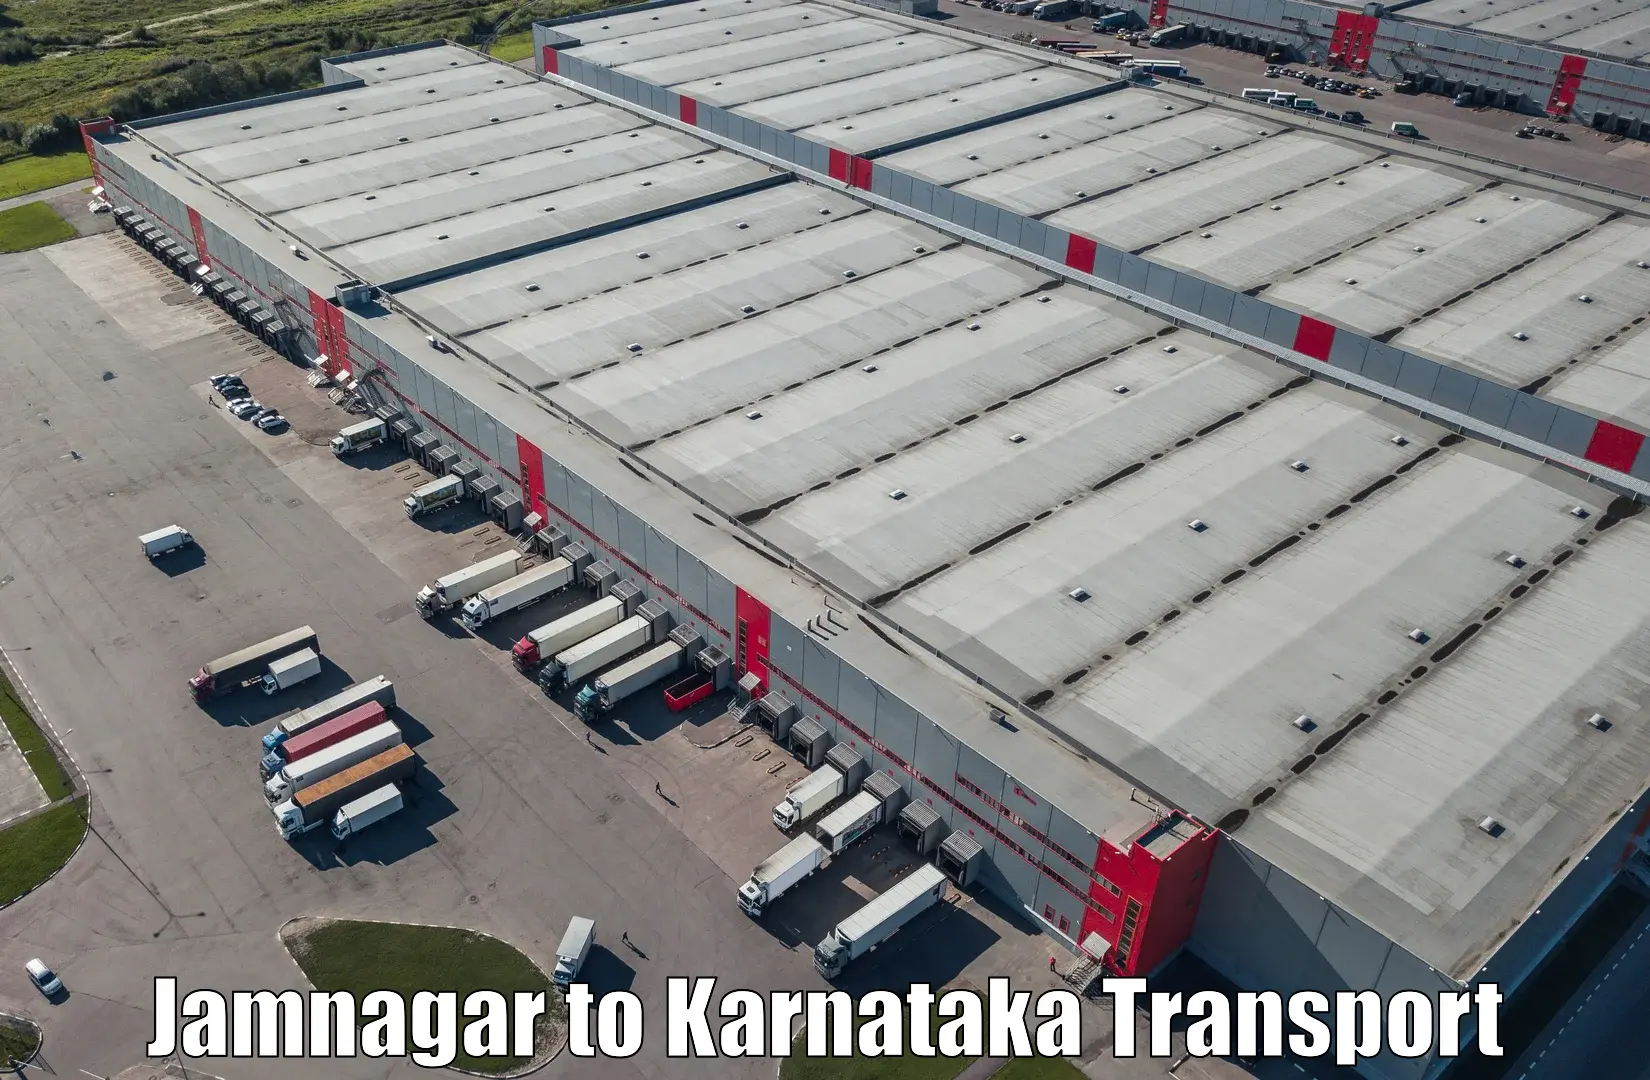 Goods delivery service Jamnagar to Kanjarakatte